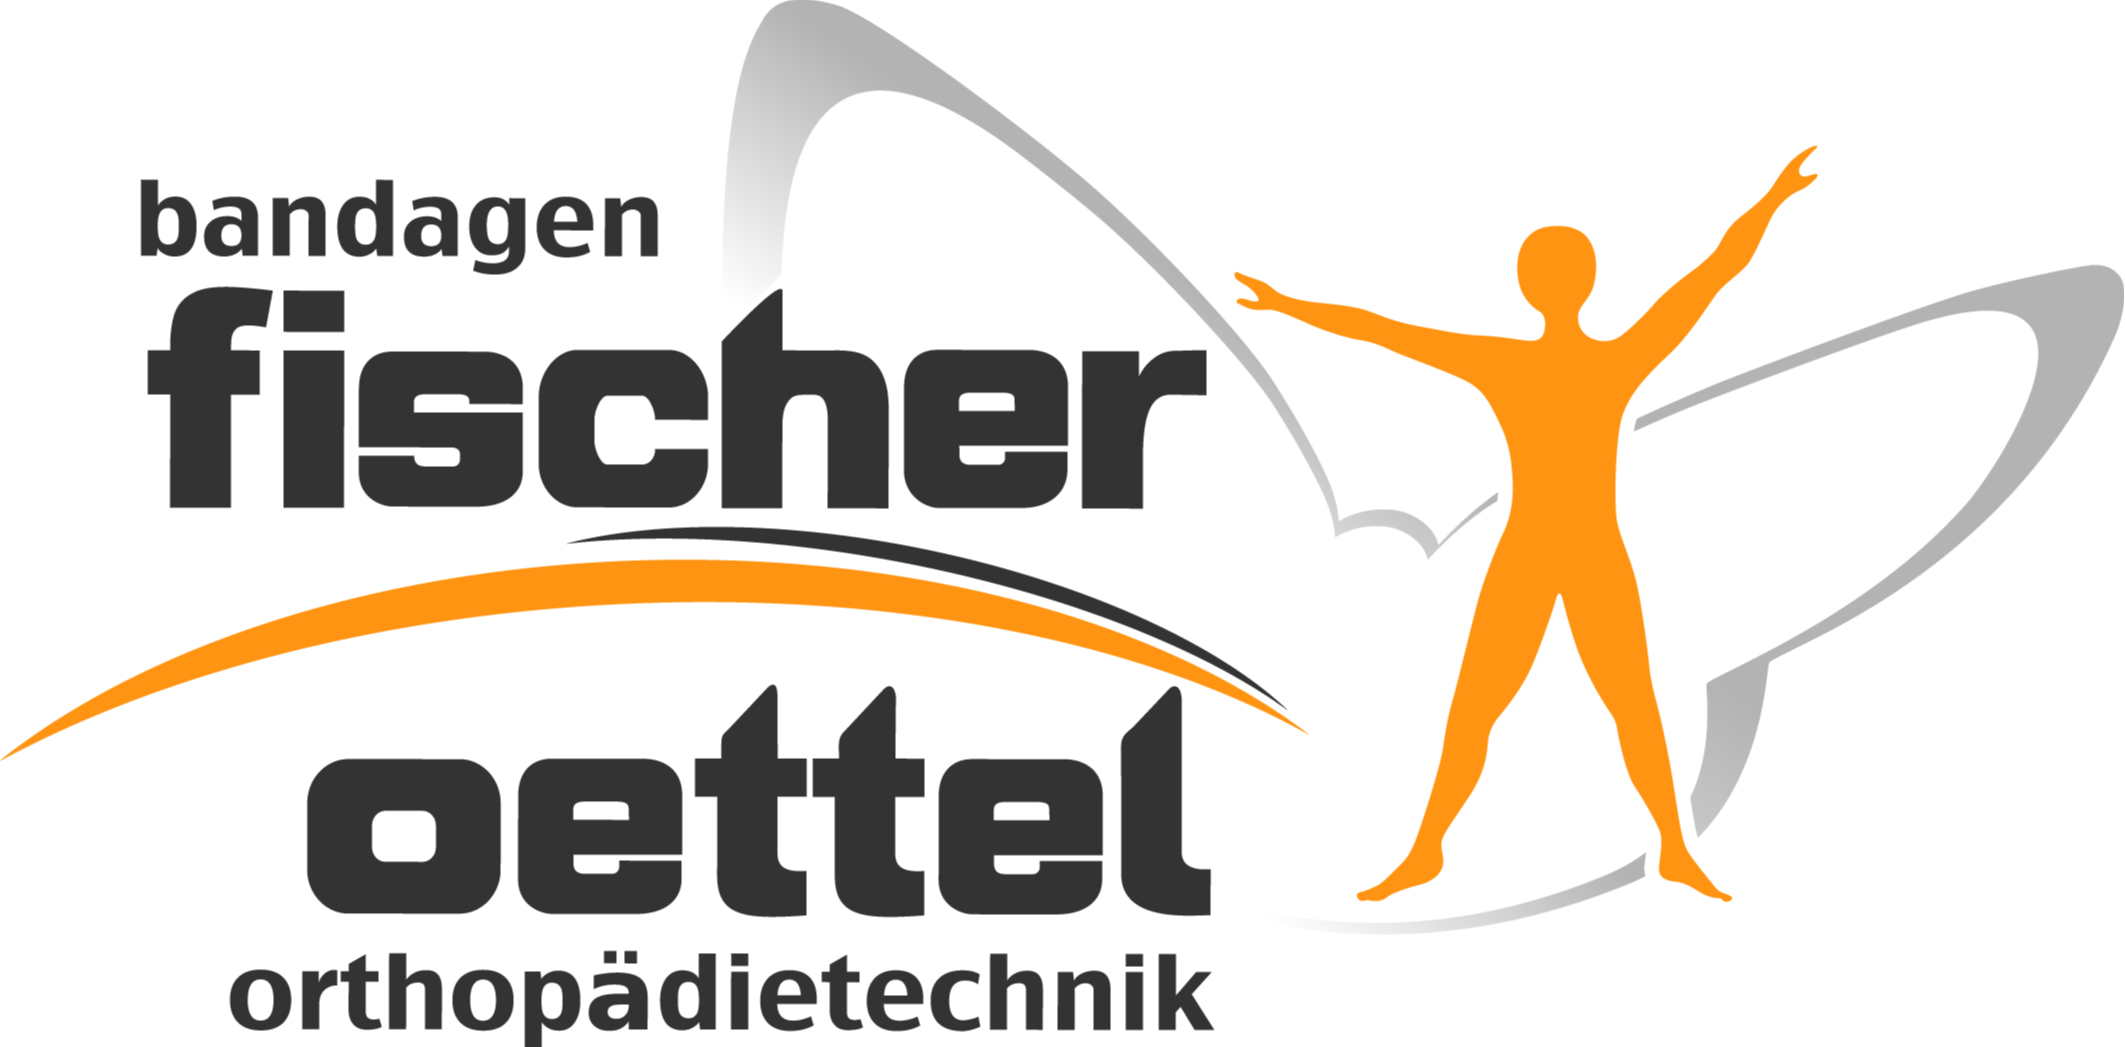 Logo der Firma Bandagen Fischer Oettel Orthopädietechnik aus Adorf/Vogtland